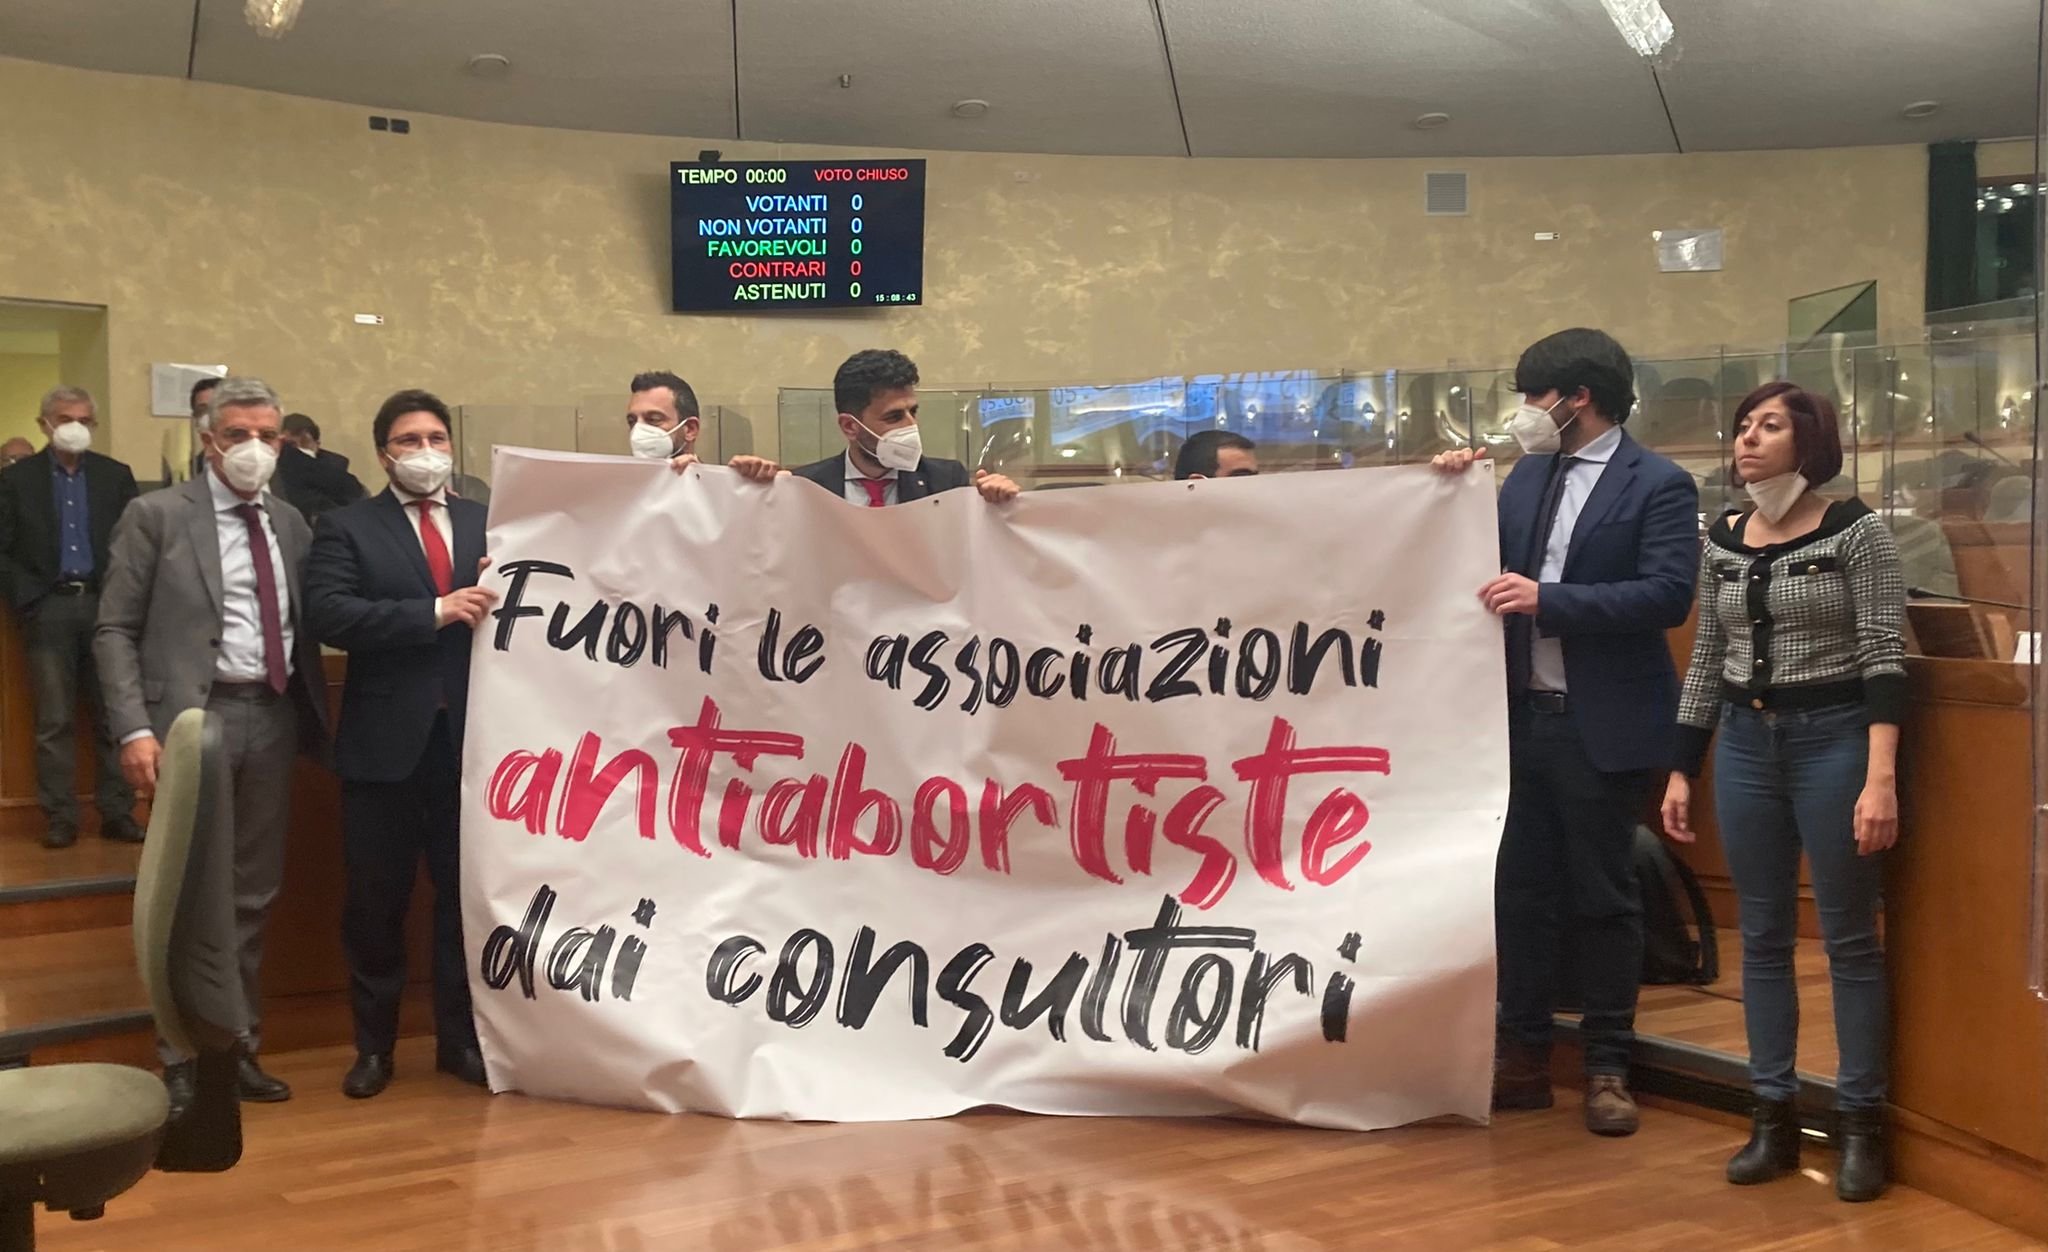 Striscione in consiglio regionale contro le associazioni antiabortiste: “Vadano fuori dai consultori”